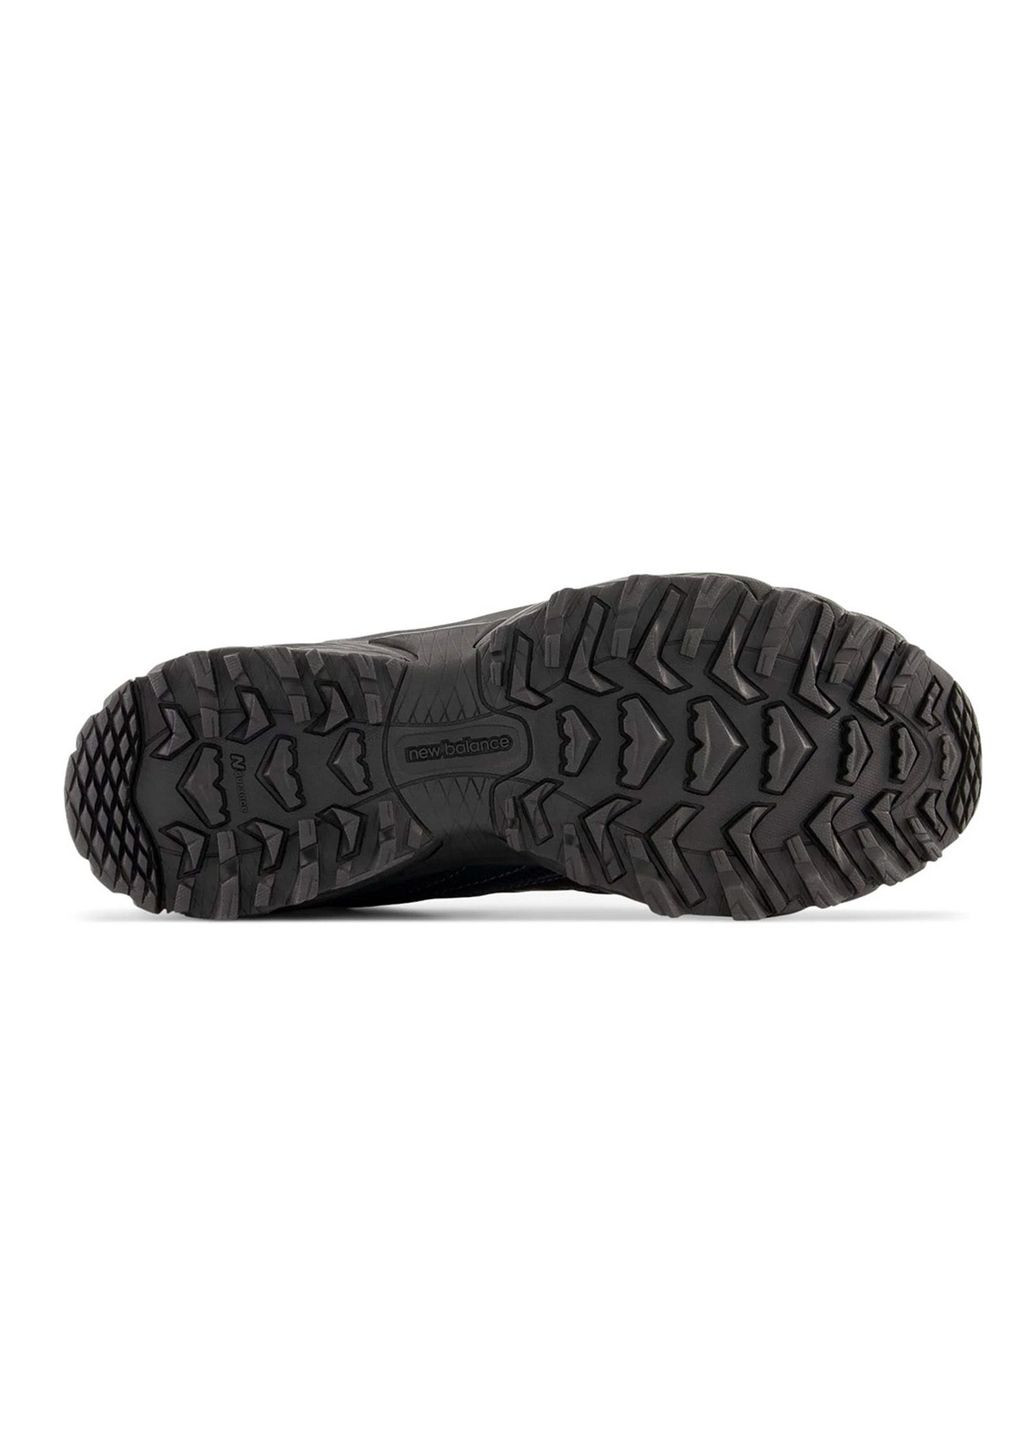 Черные всесезонные кроссовки мужские 610 ml610tbb весна-лето сетка текстиль черные New Balance